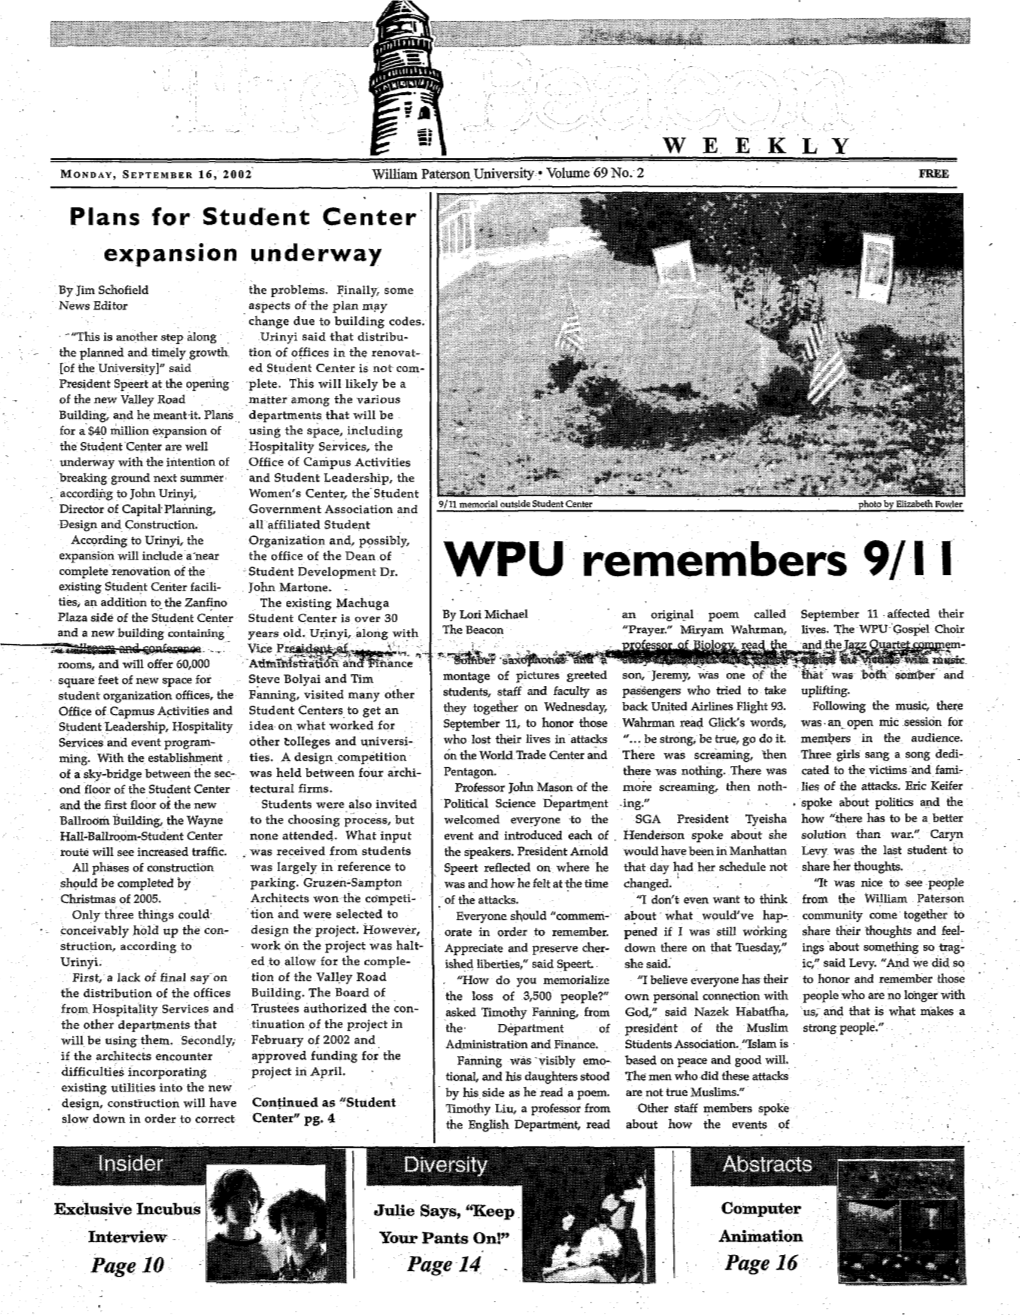 WPU Remembers 9/11